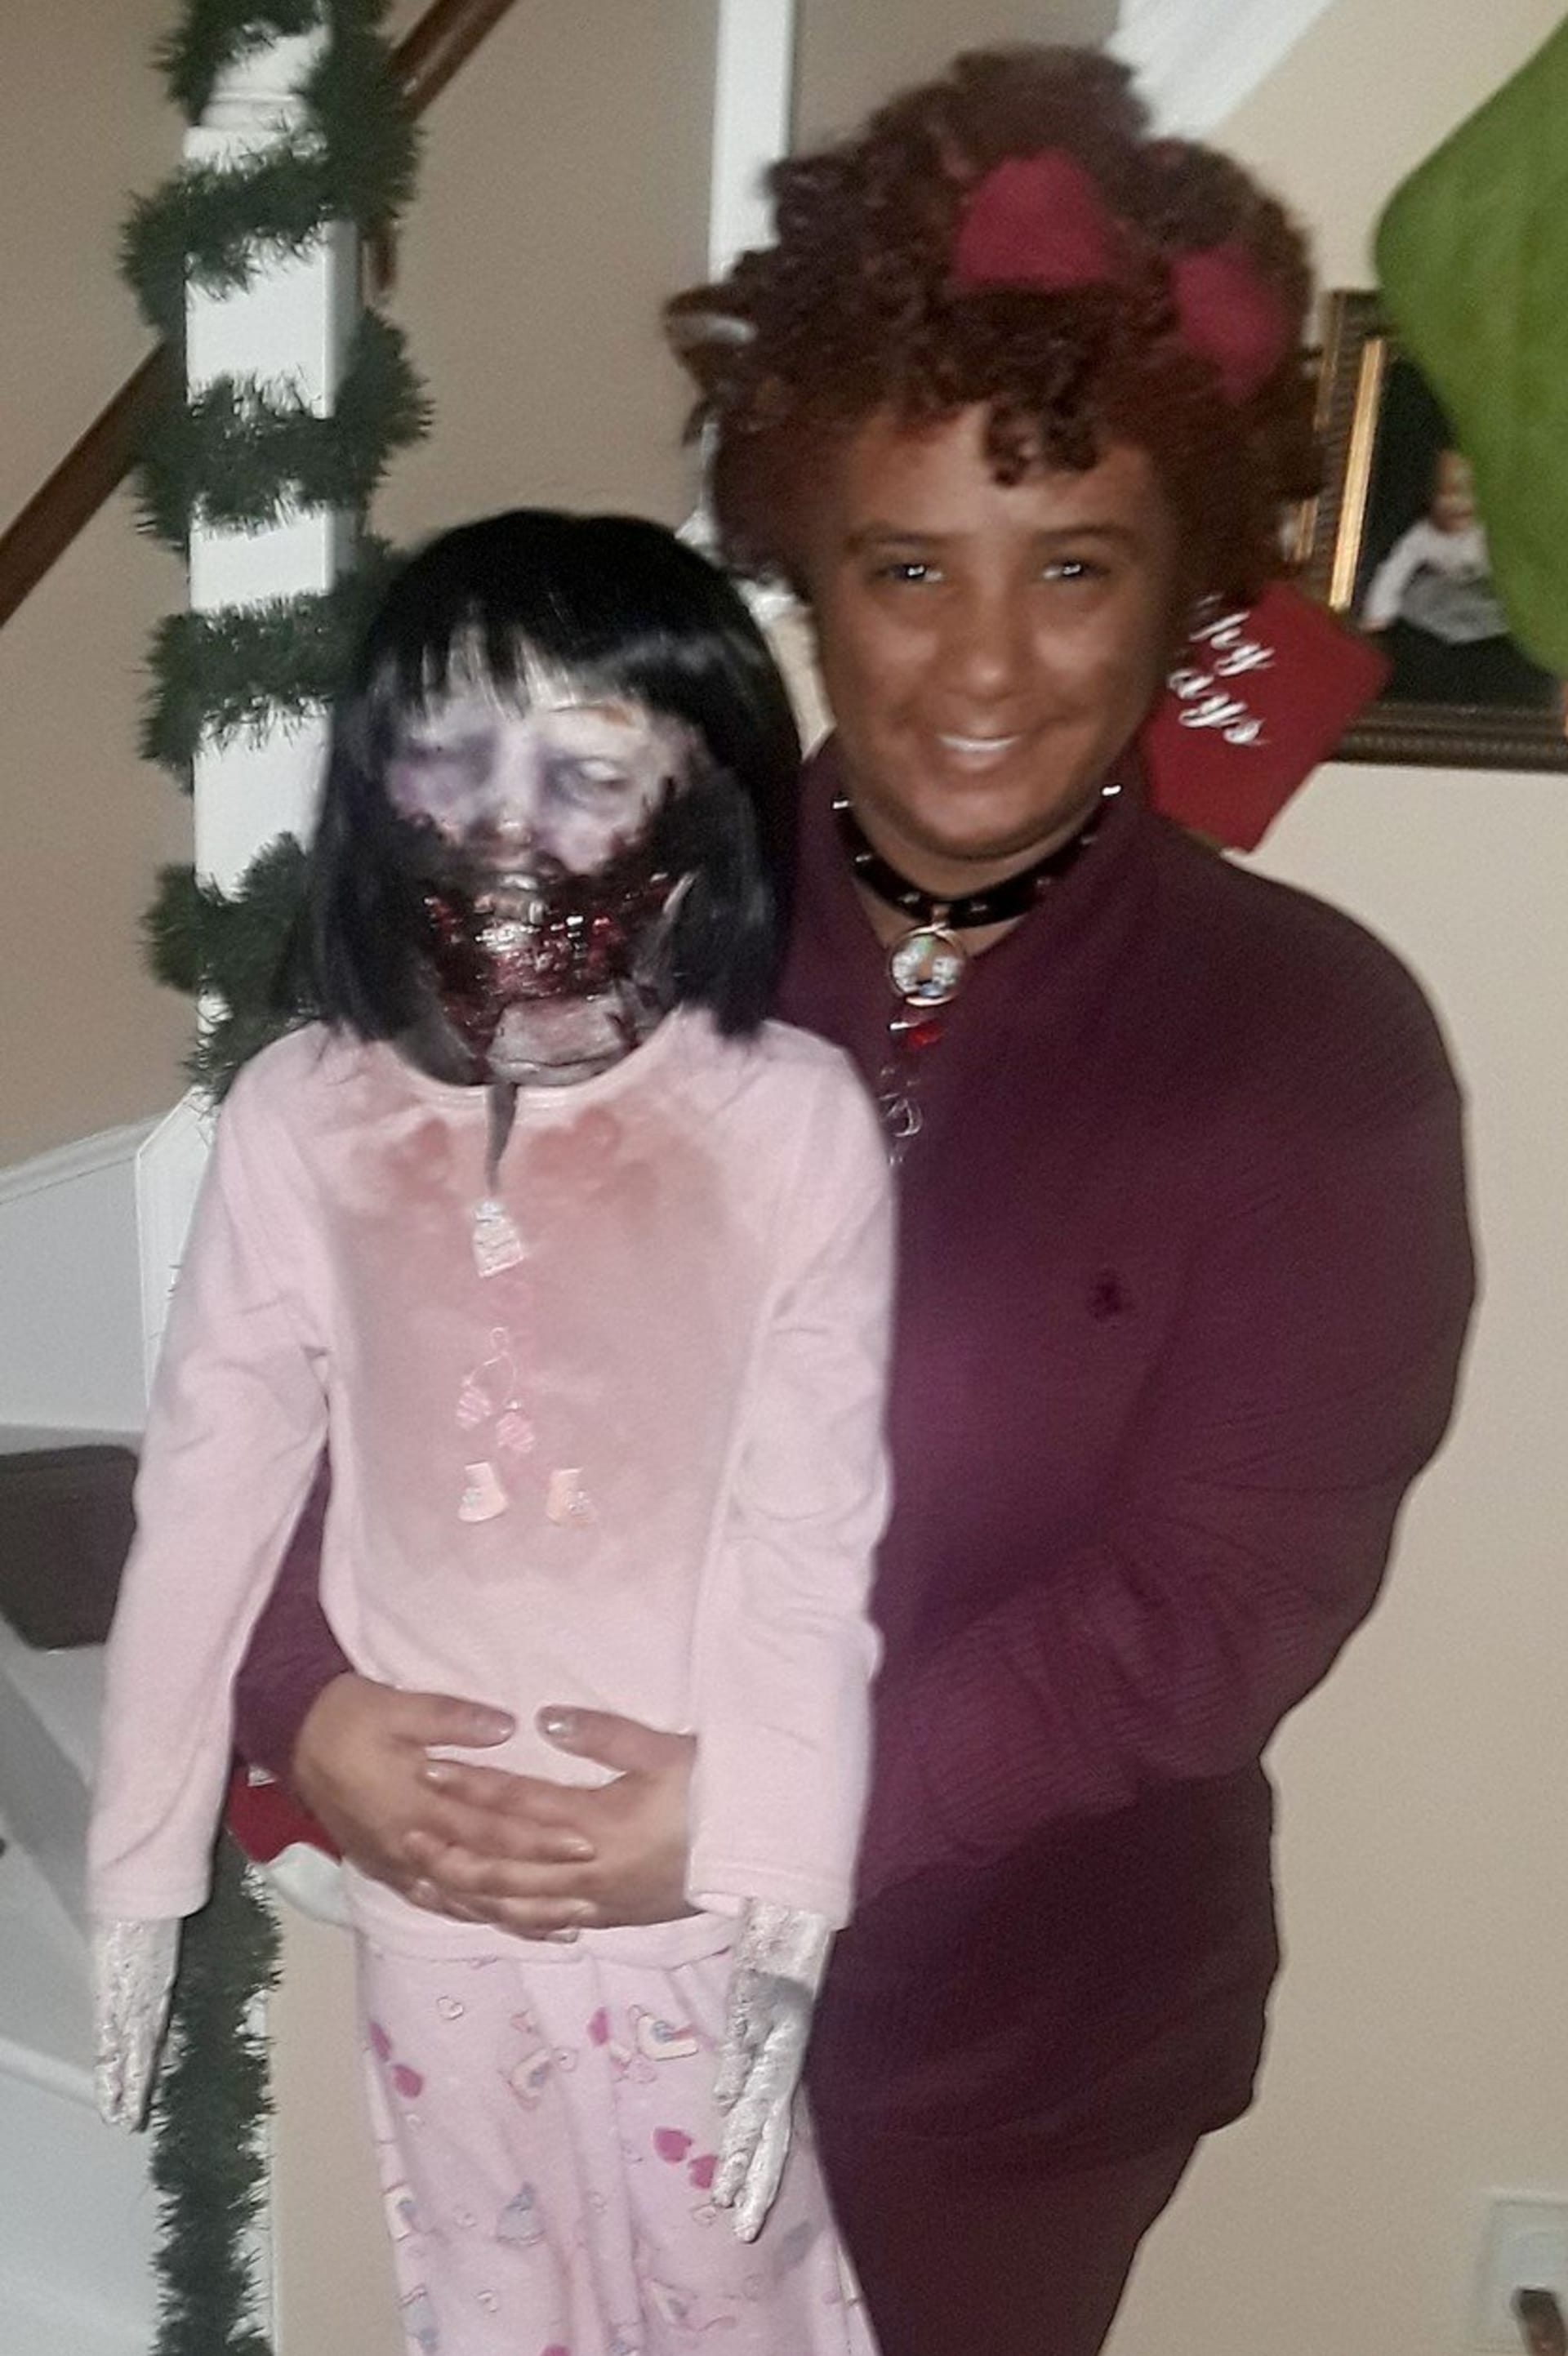 Teenagerka si chce vzít svou zombie panenku 1